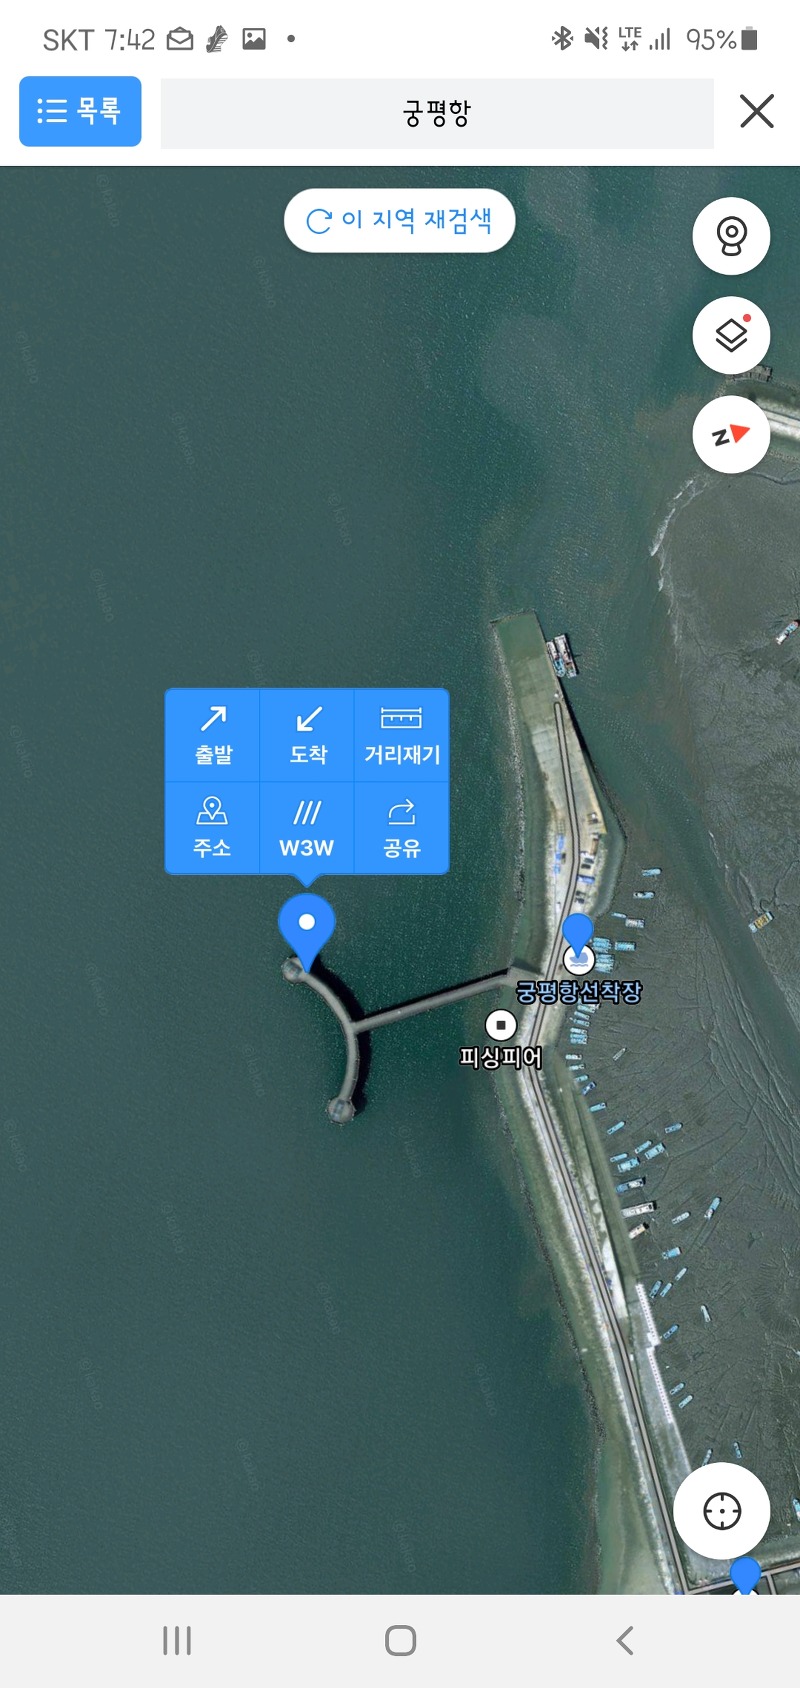 카카오맵 어플(모바일 지도앱)에서 거리재기, 거리측정 방법